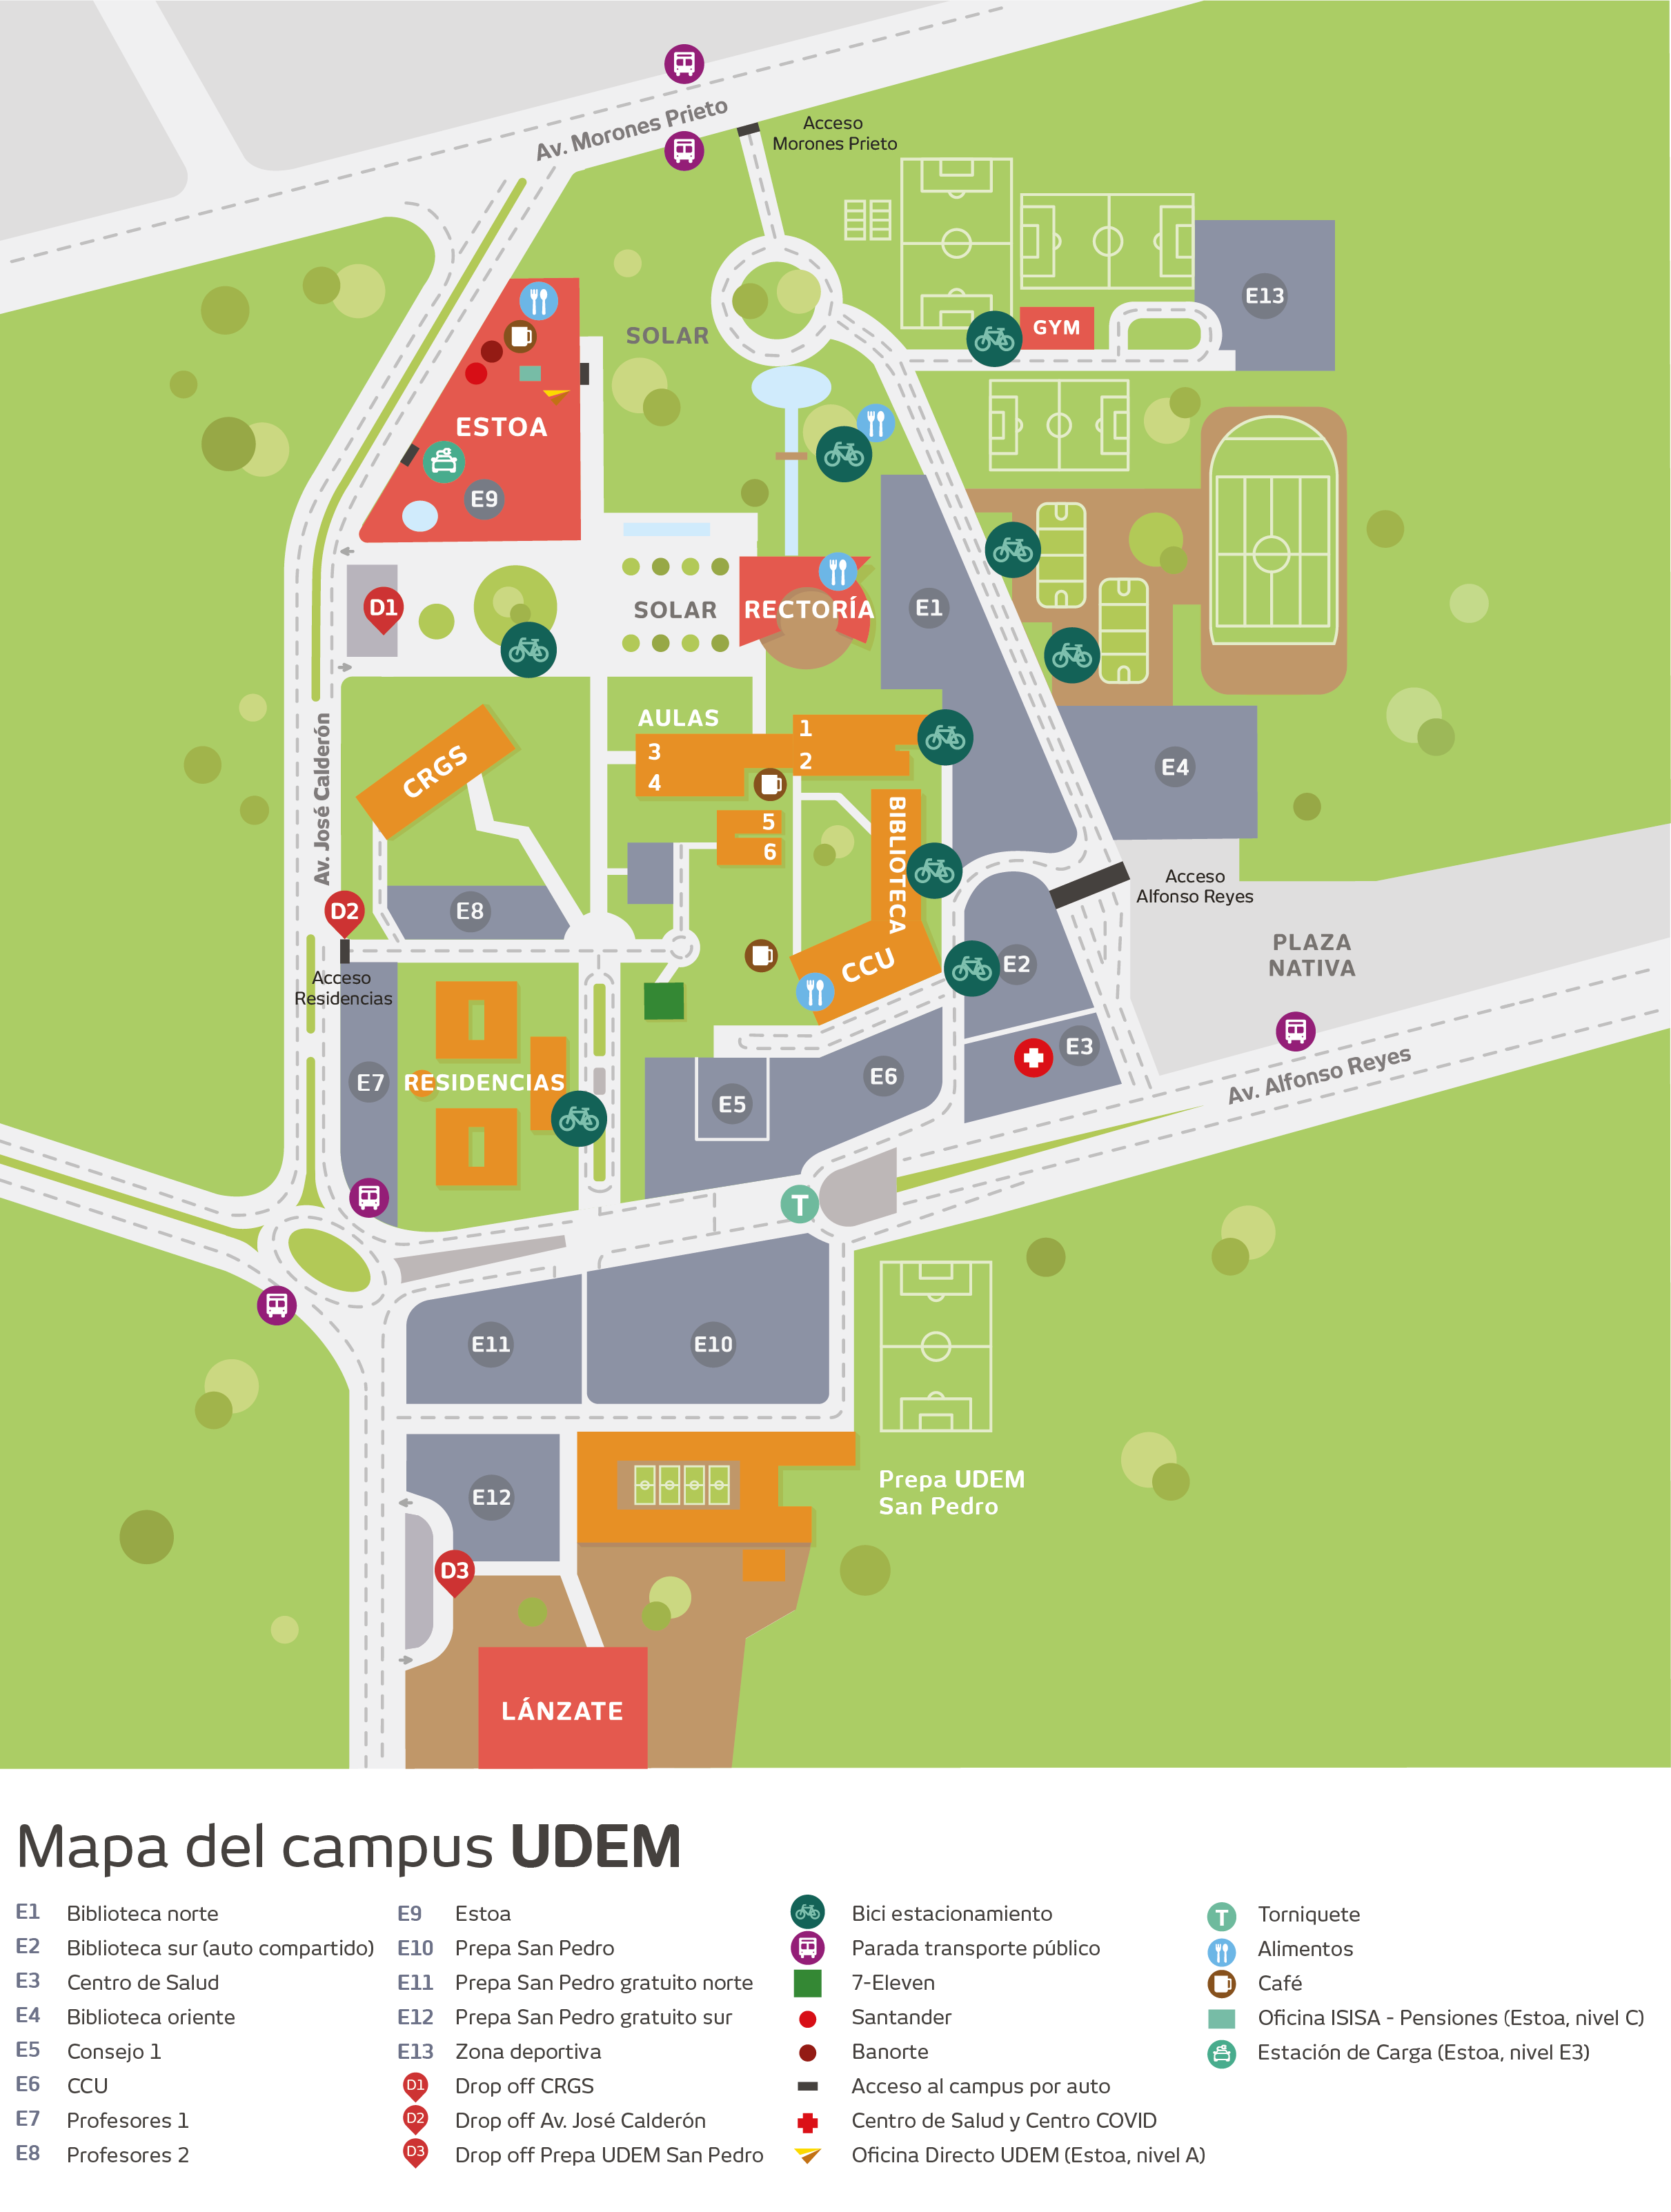 Mapa de campus UDEM y accesos